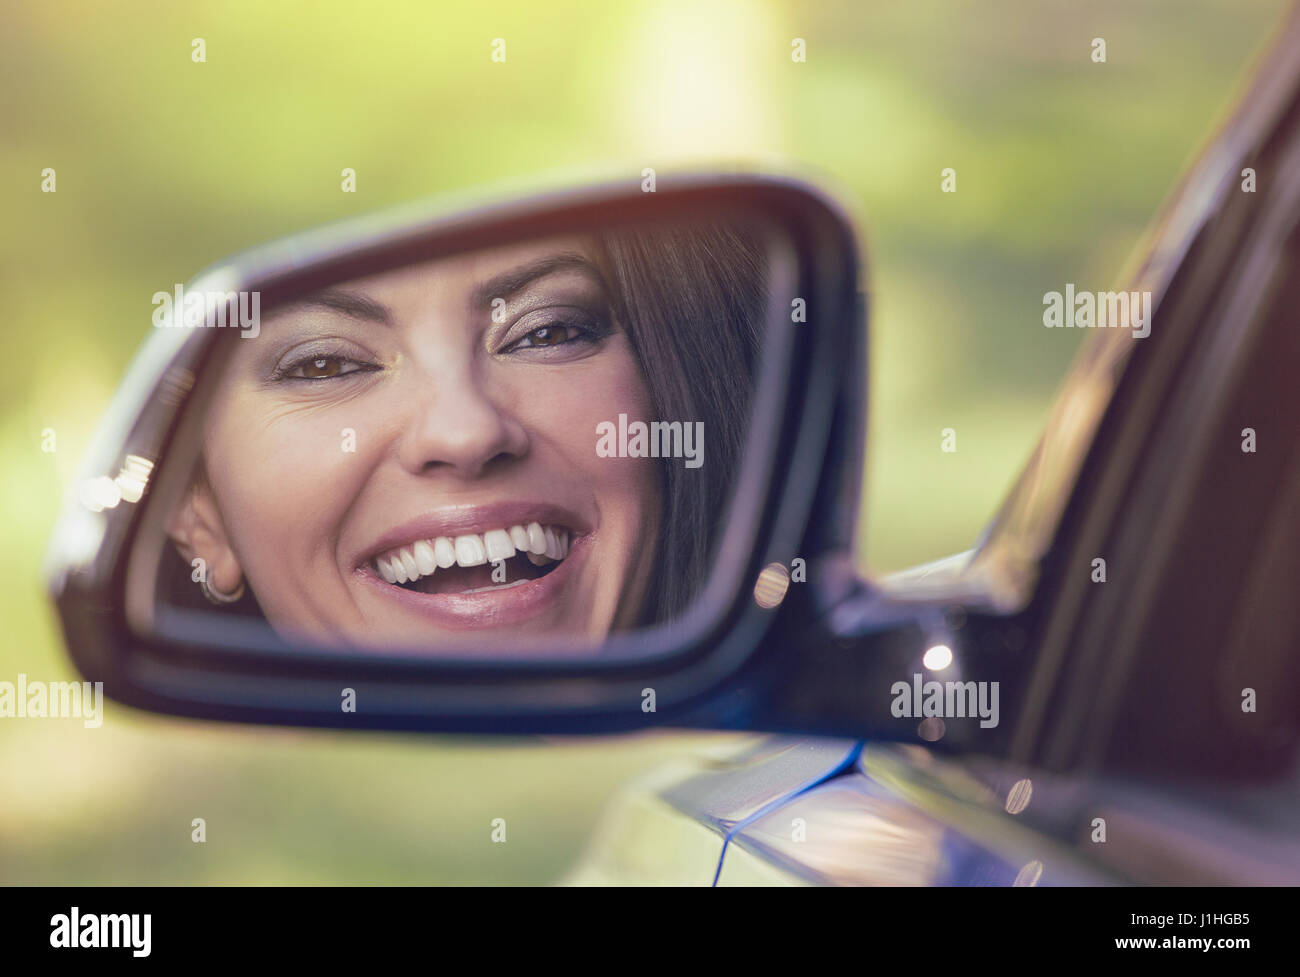 Feliz joven conductor mirando en el espejo retrovisor lateral de coche, asegurándose lane es gratis antes de hacer un giro. Expresión de cara humana positiva las emociones. Seguro Foto de stock